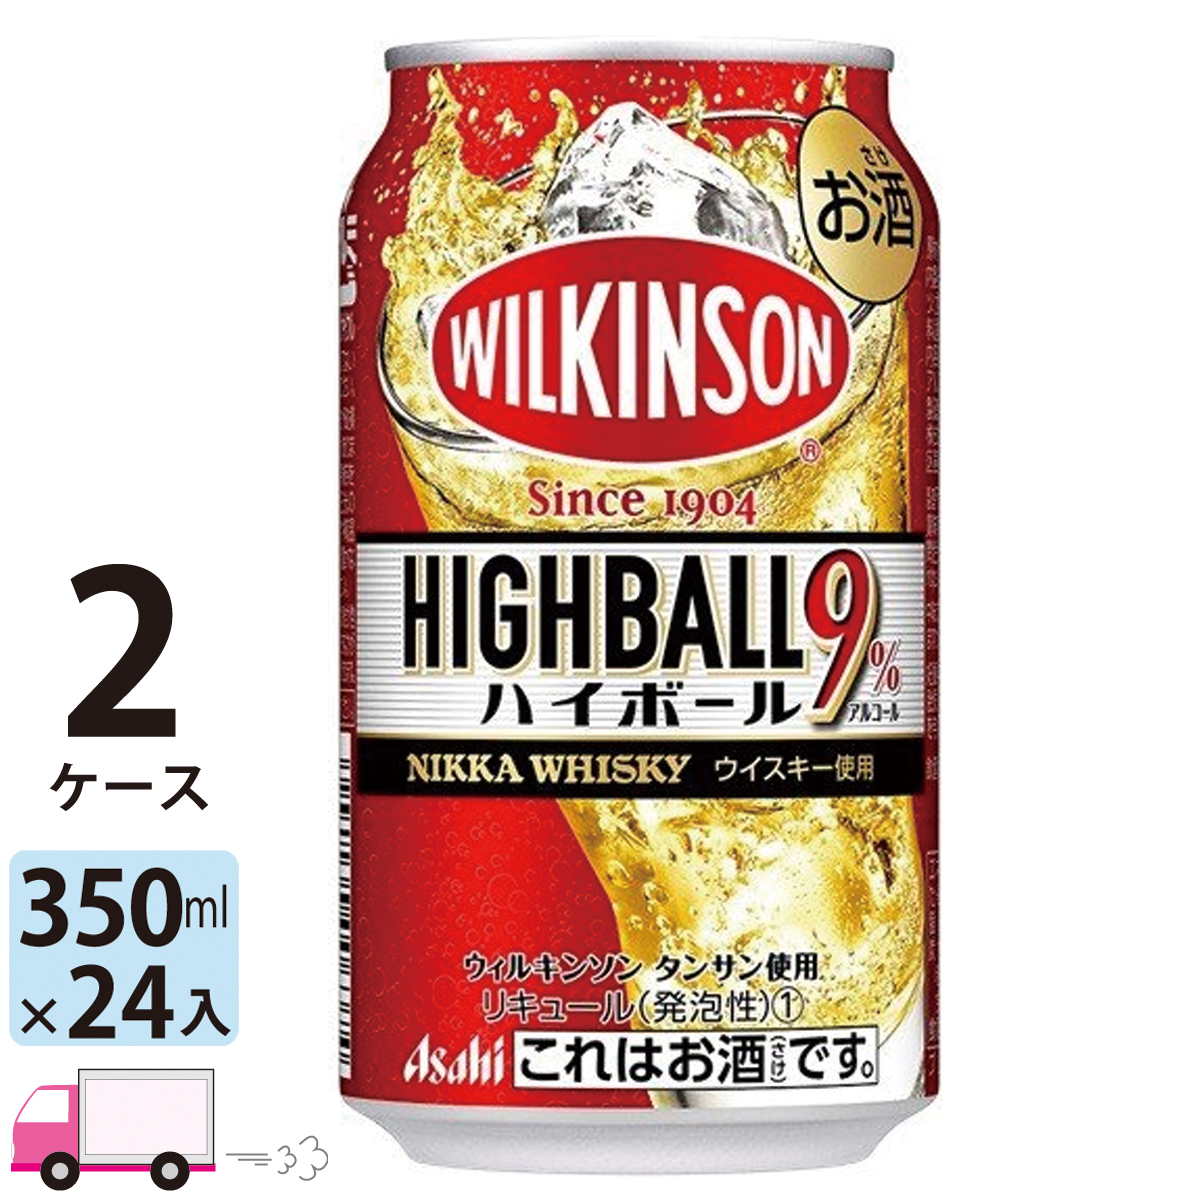 アサヒ ウィルキンソン ハイボール 楽天スーパーセール 350ml バーゲンで 24缶入 48本 送料無料 2ケース